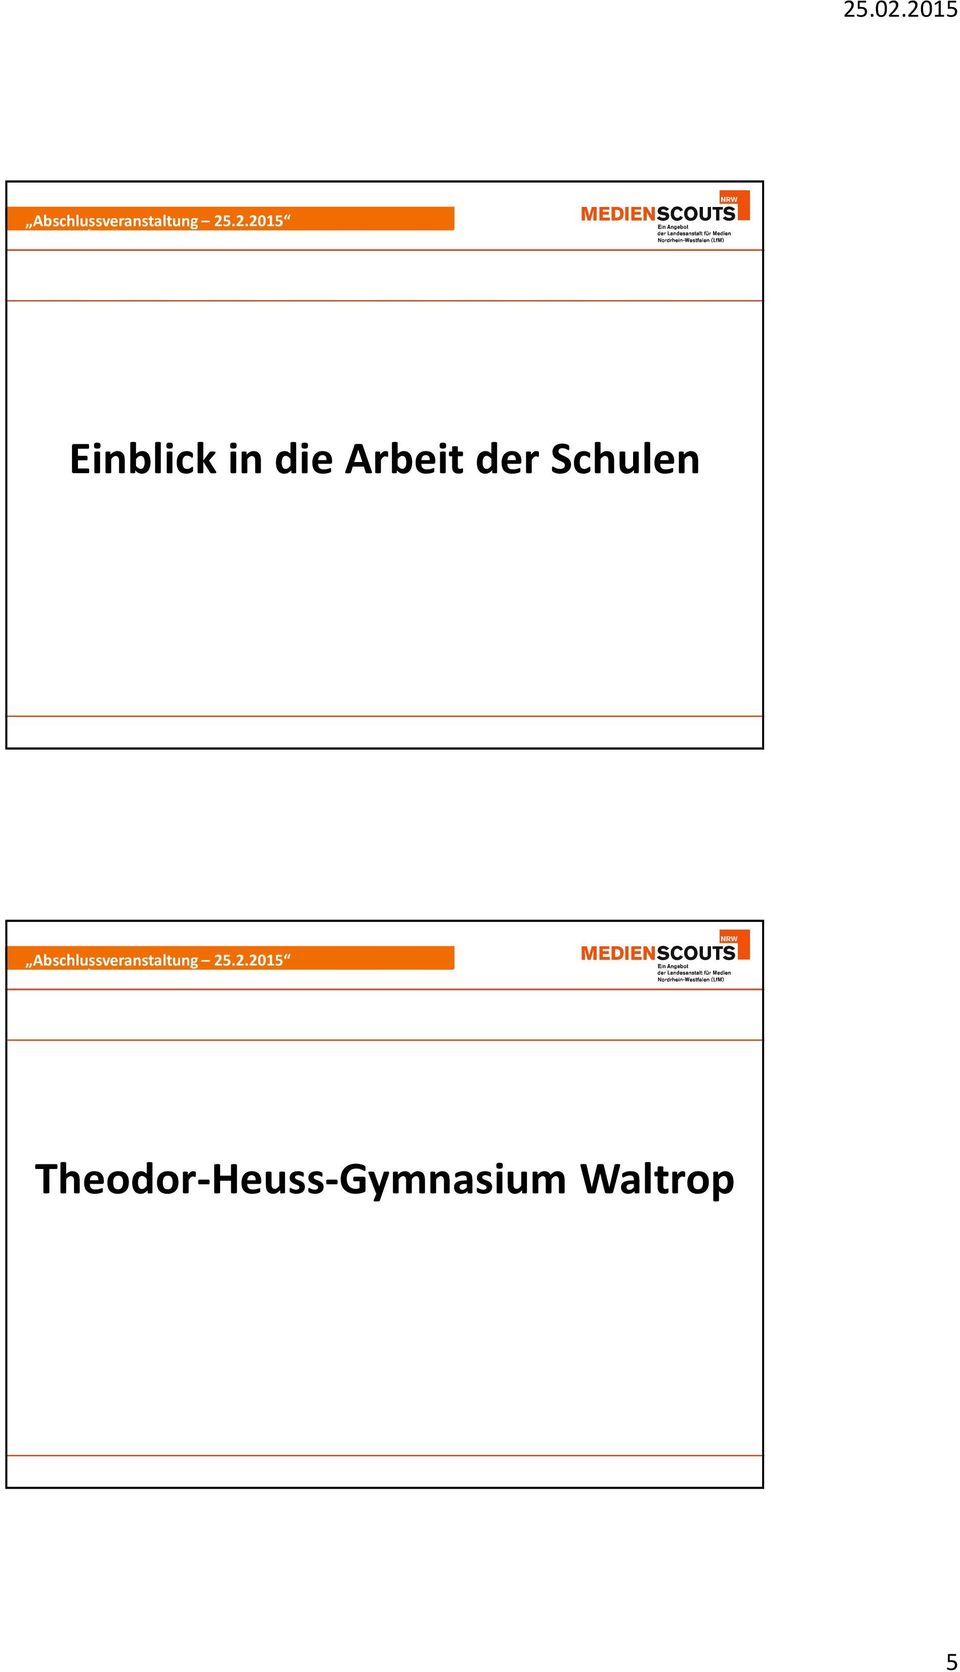 Poguntke Seite 9 Theodor-Heuss-Gymnasium Waltrop Medienscouts NRW - Querthema